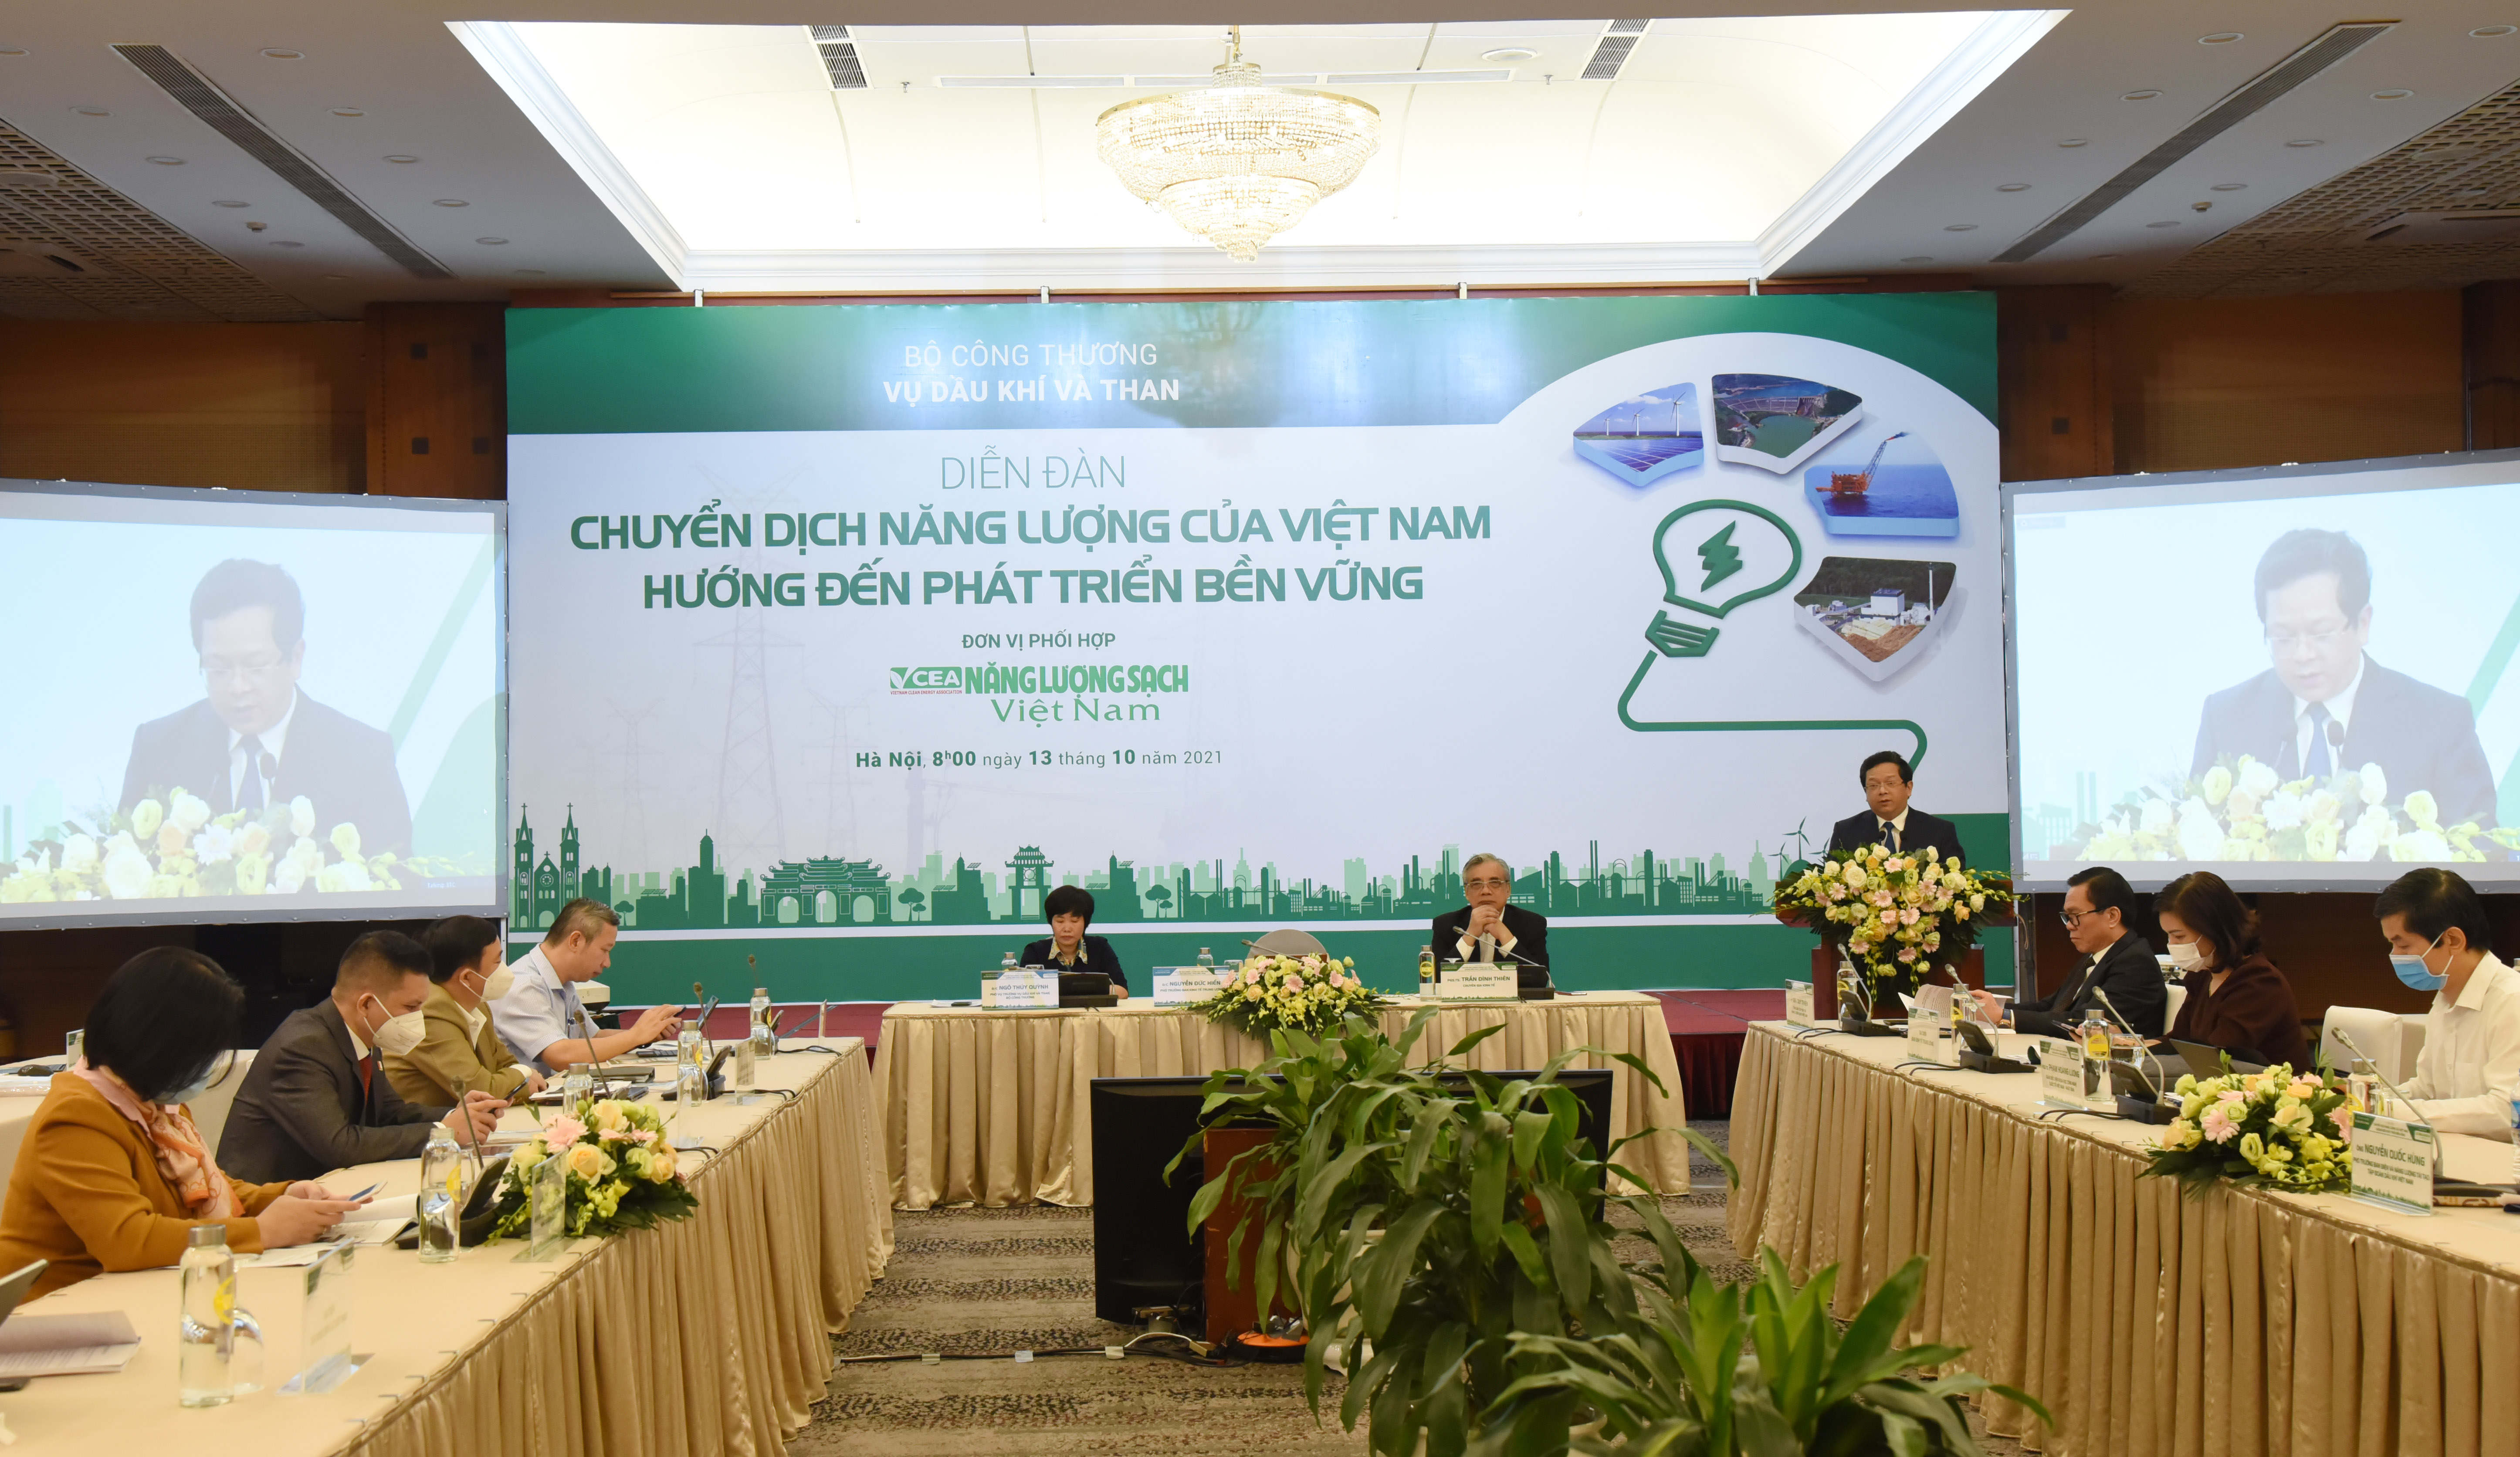 Toàn cảnh Diễn đàn chuyển dịch năng lượng của Việt Nam hướng đến phát triển bền vững